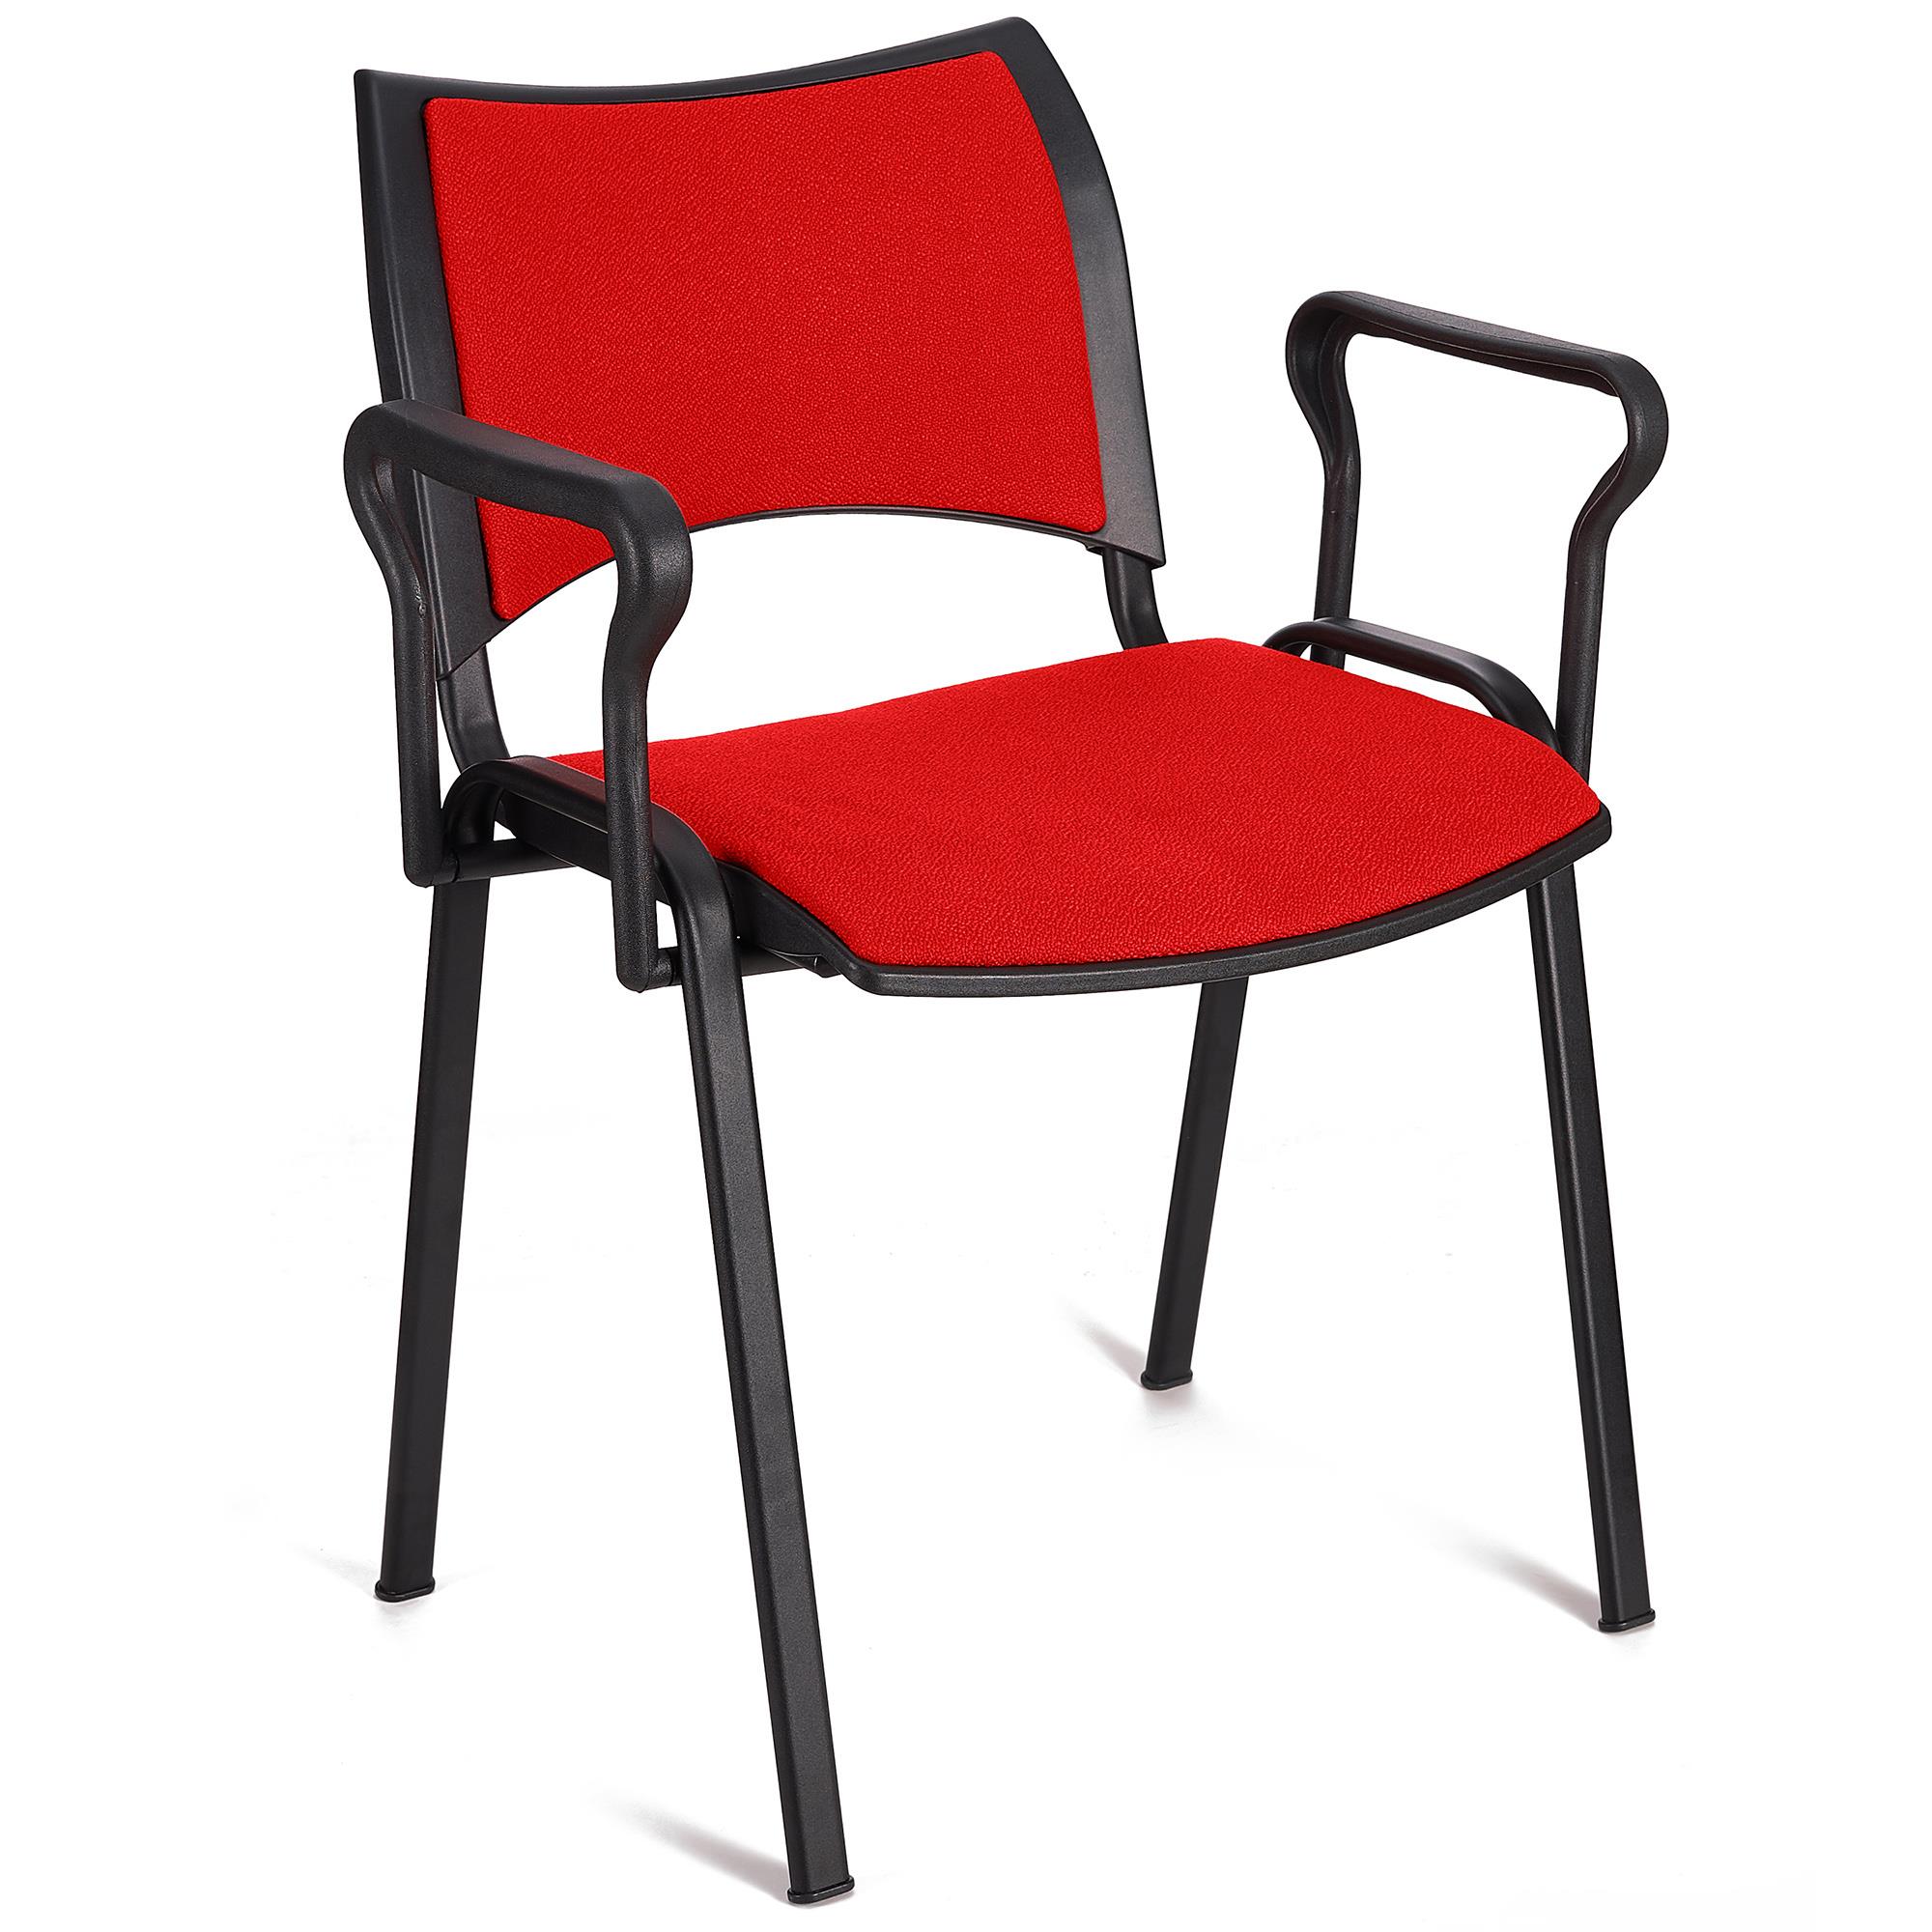 Cadeira de Visita ROMEL COM BRAÇOS, Empilhável, Pernas Pretas, Em Pano, Vermelho